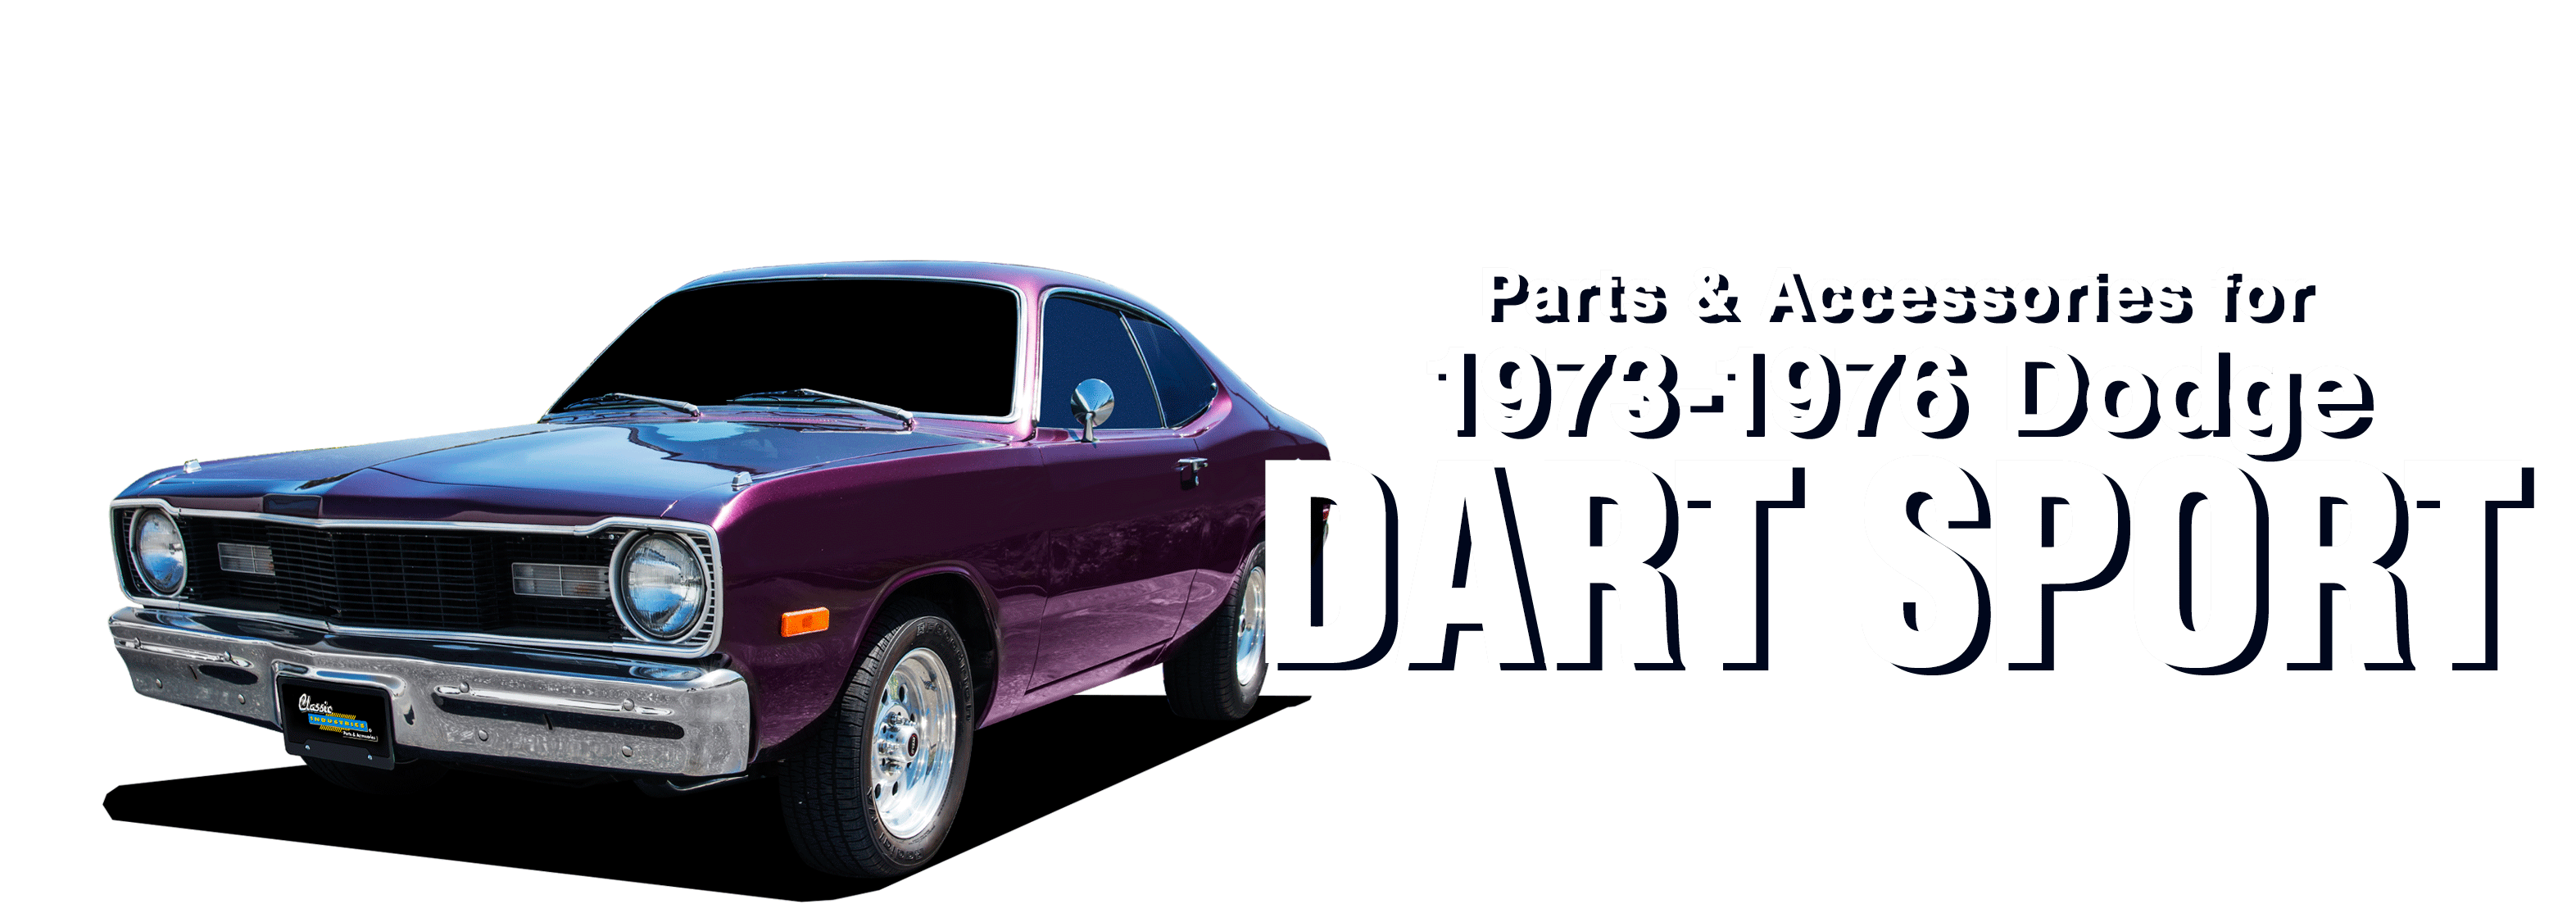 Dodge-DartSport-vehicle-desktop